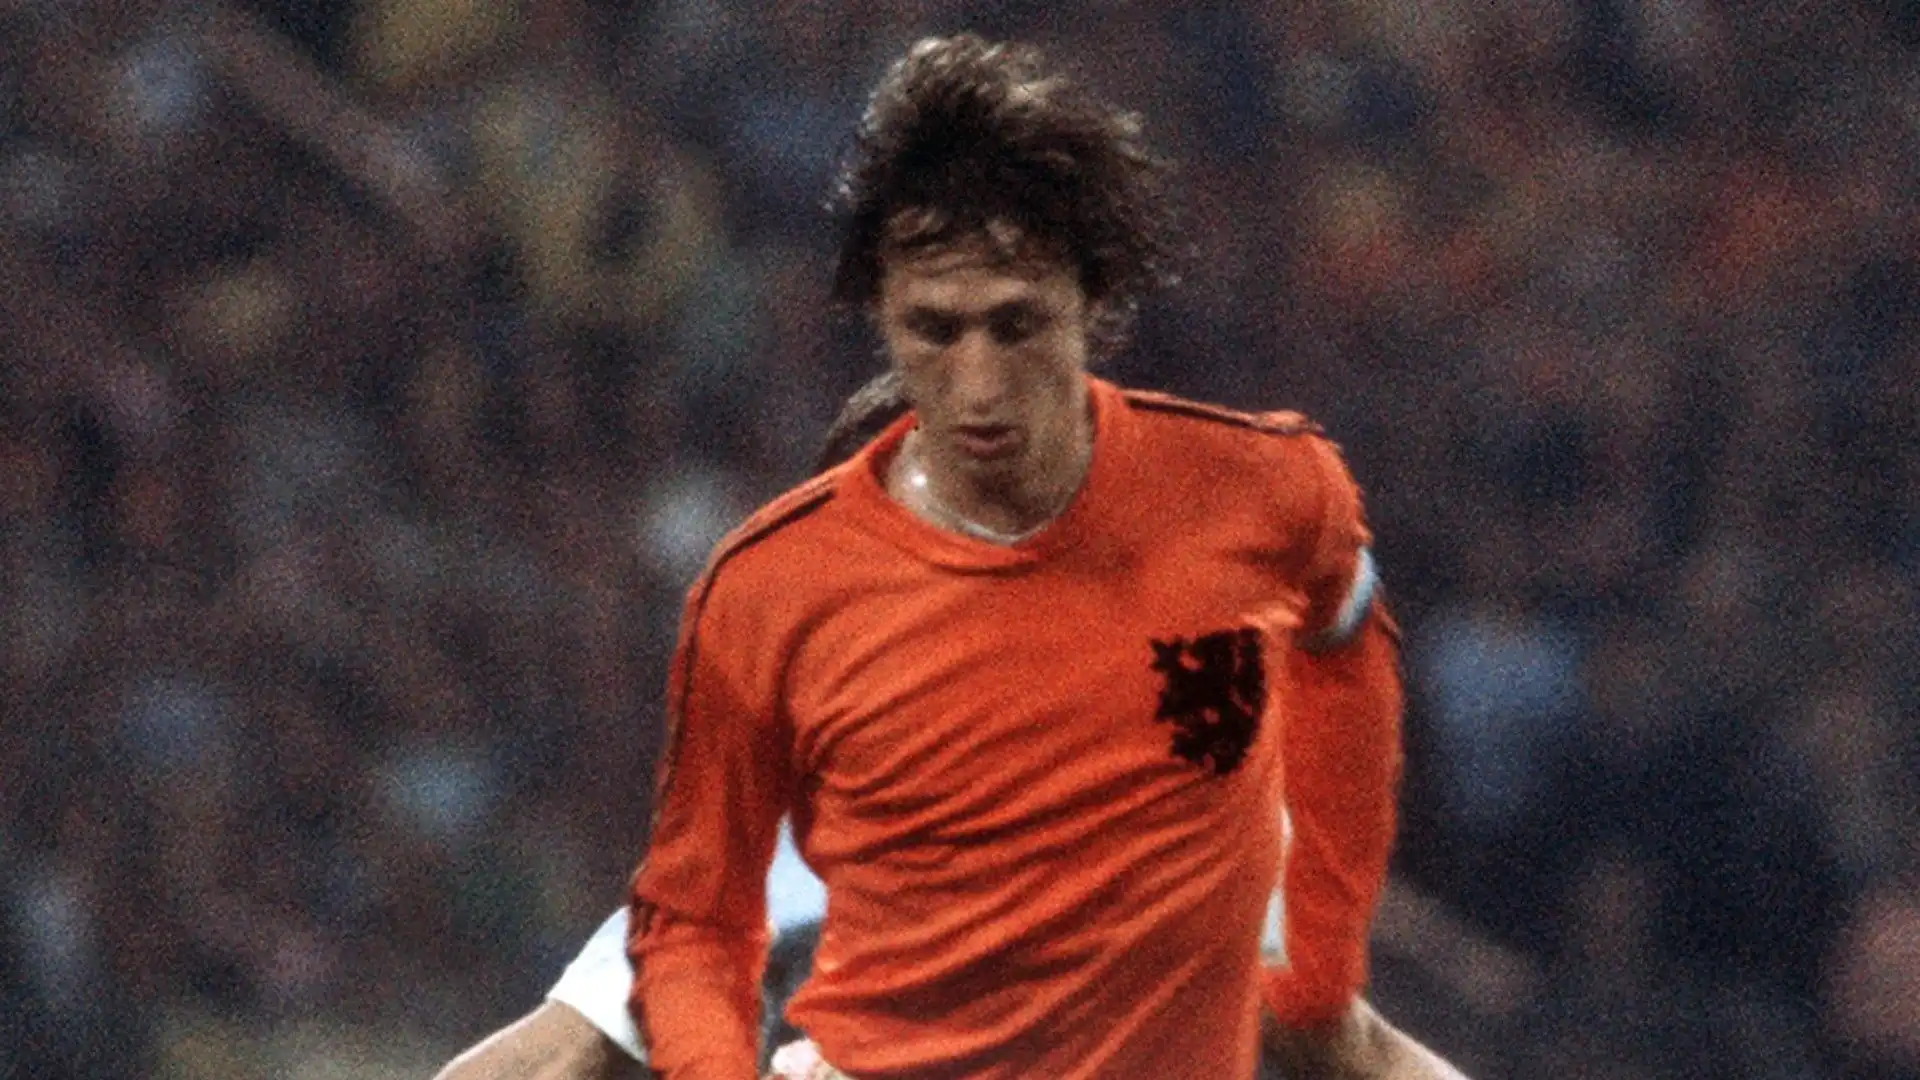 5- Johan Cruyff